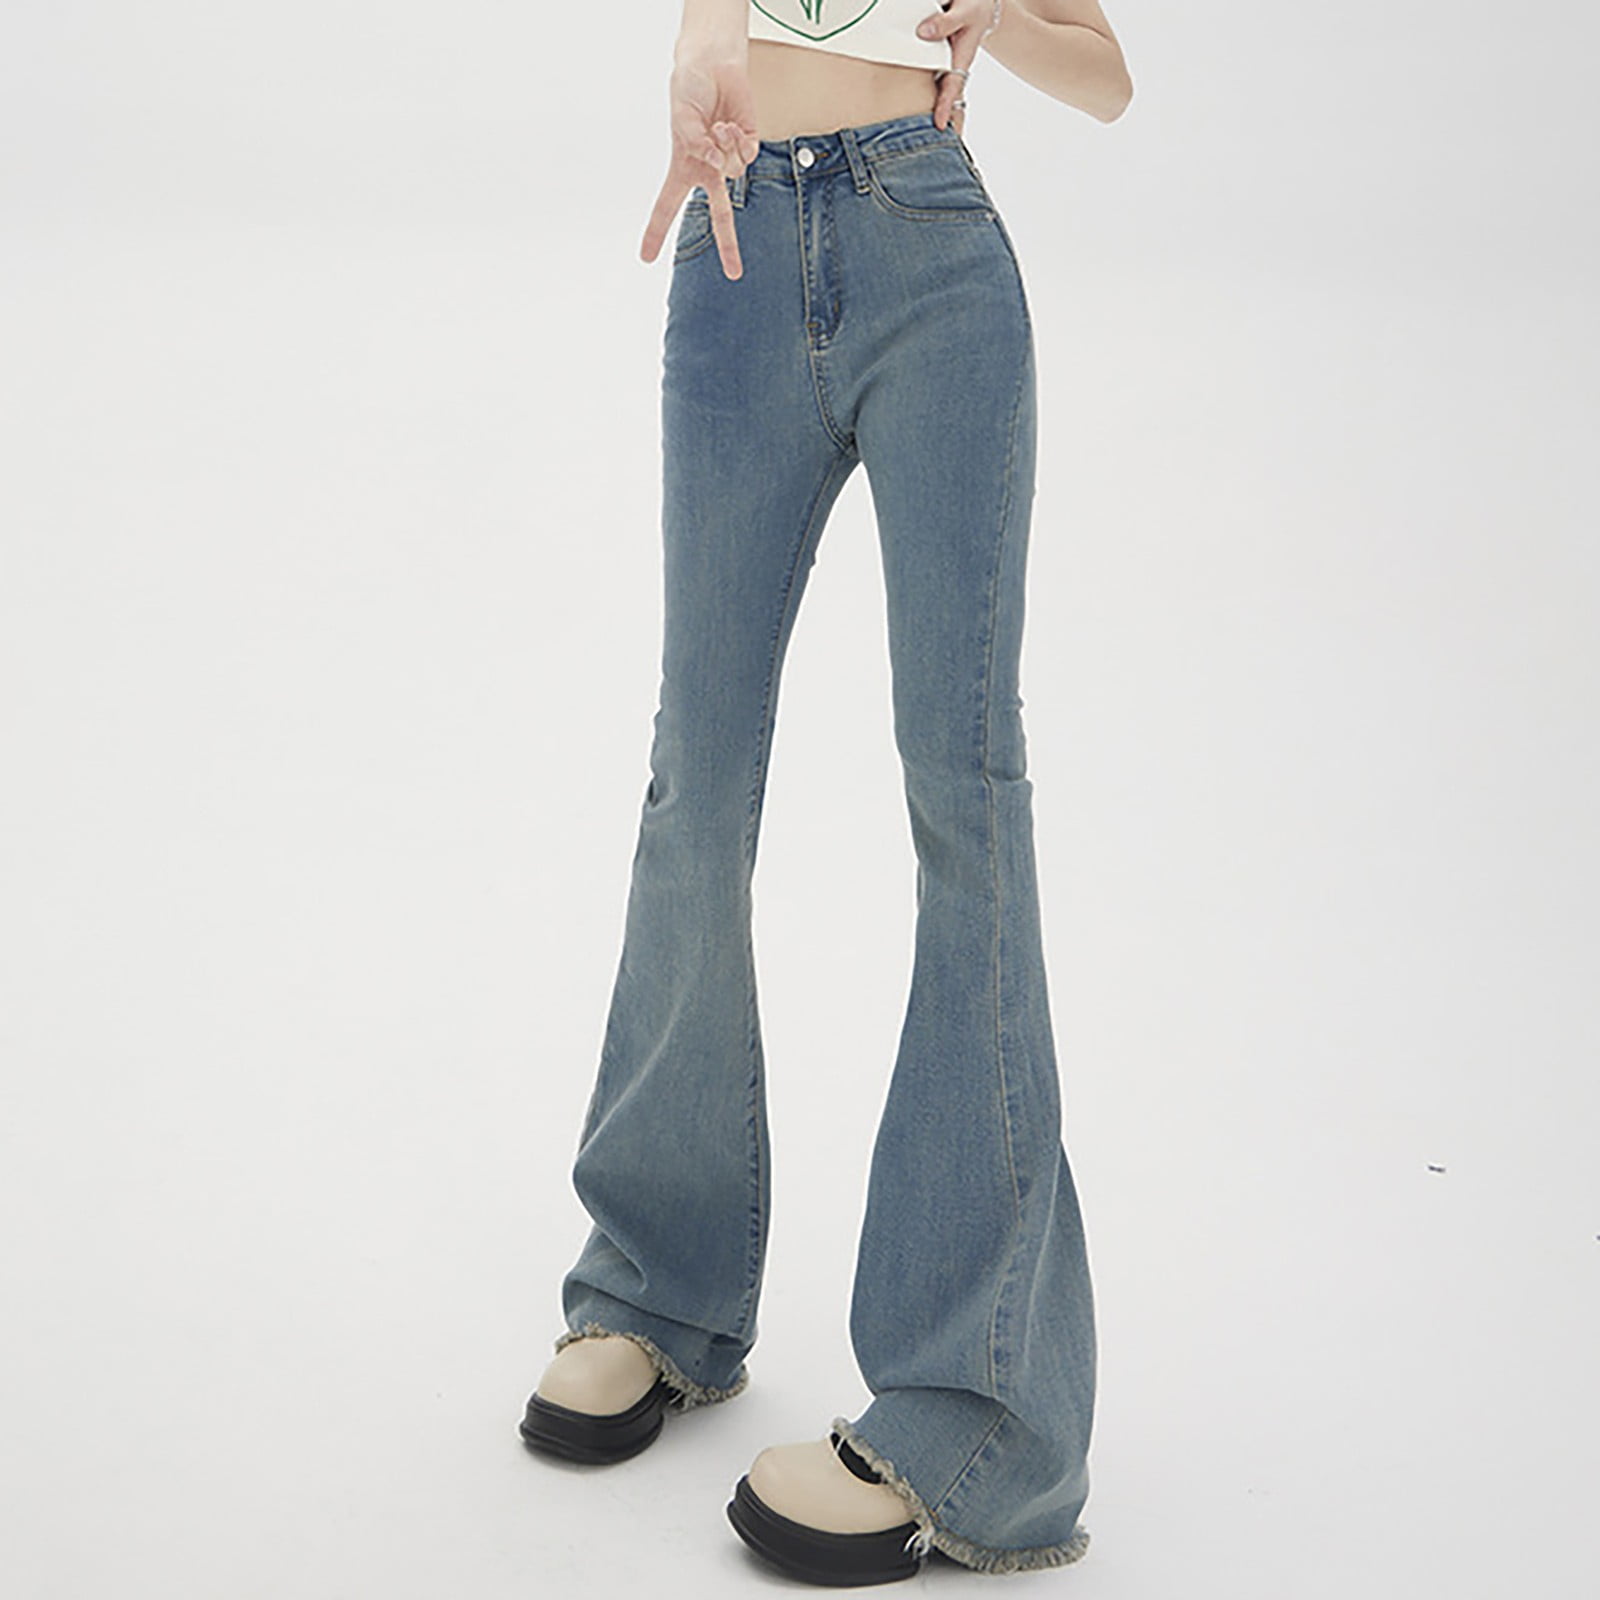 Aayomet Womens Tall Pants High Waist Flared Jeans Slim Slim Simple